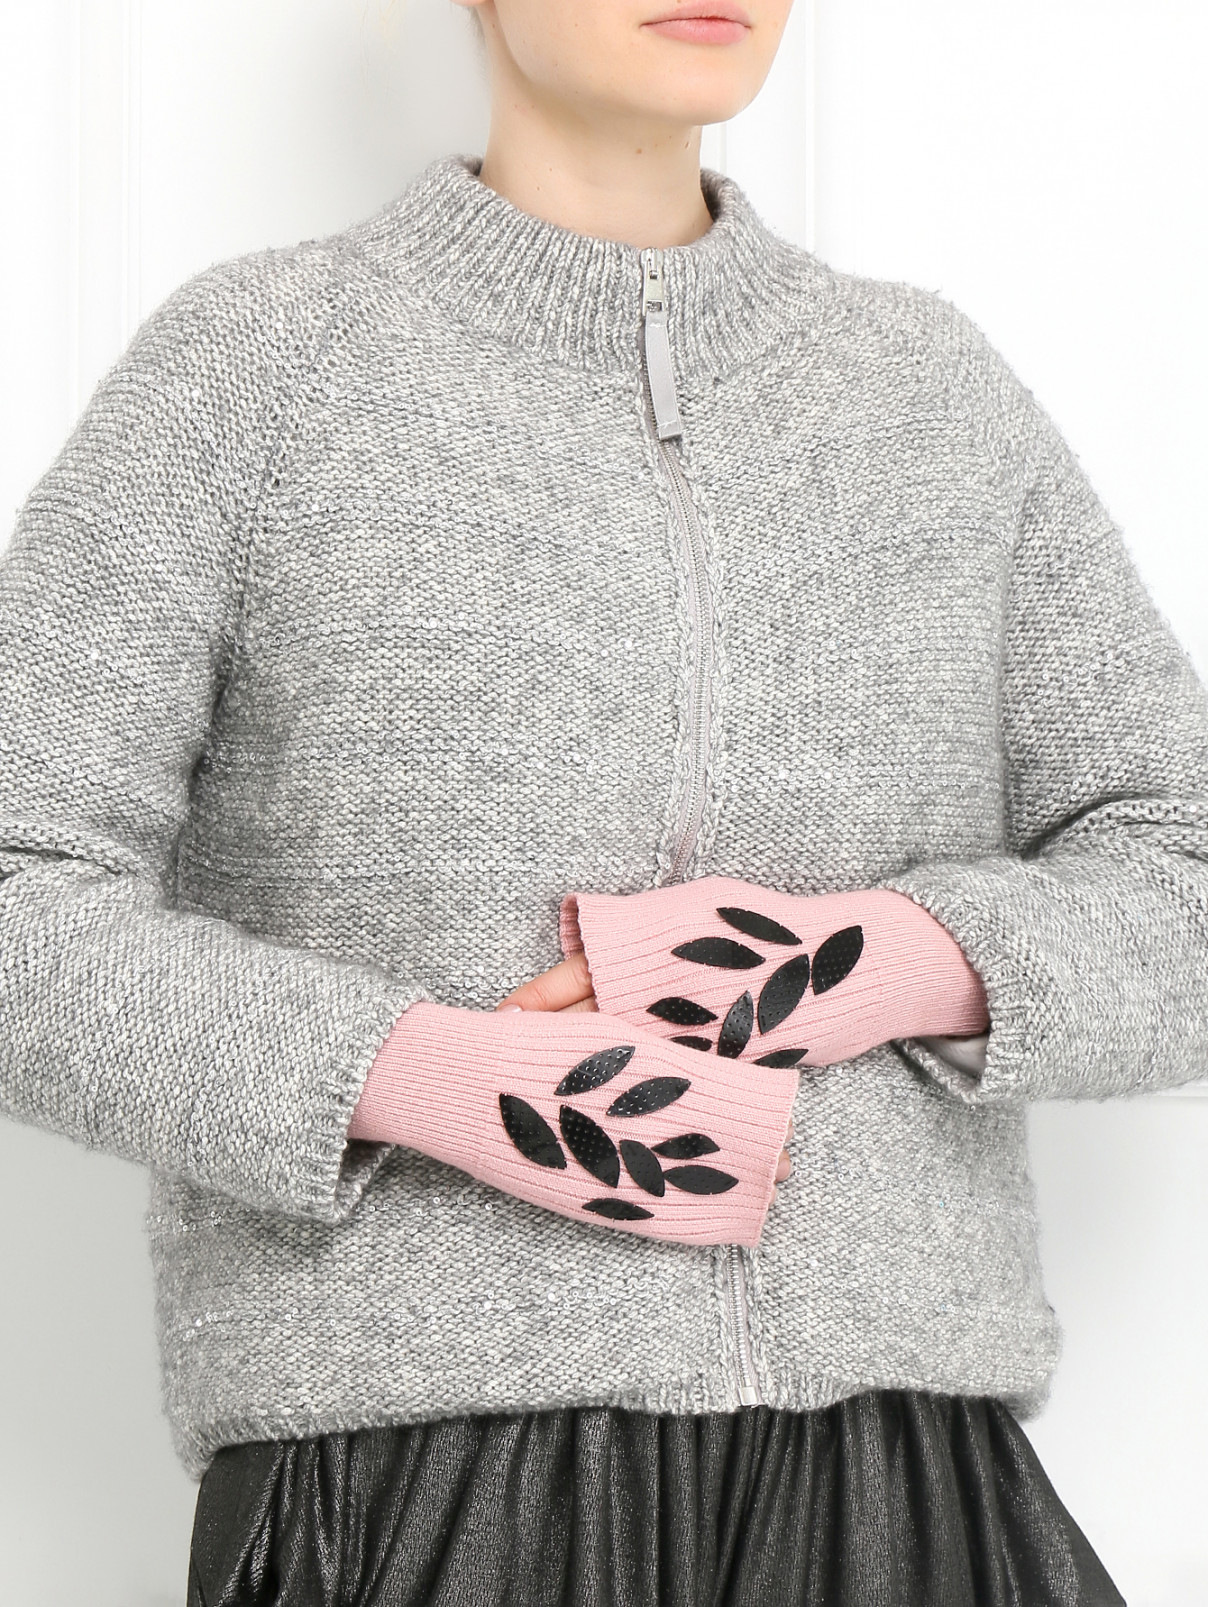 Рукава из шерсти с декором Antonio Marras  –  Модель Общий вид  – Цвет:  Розовый